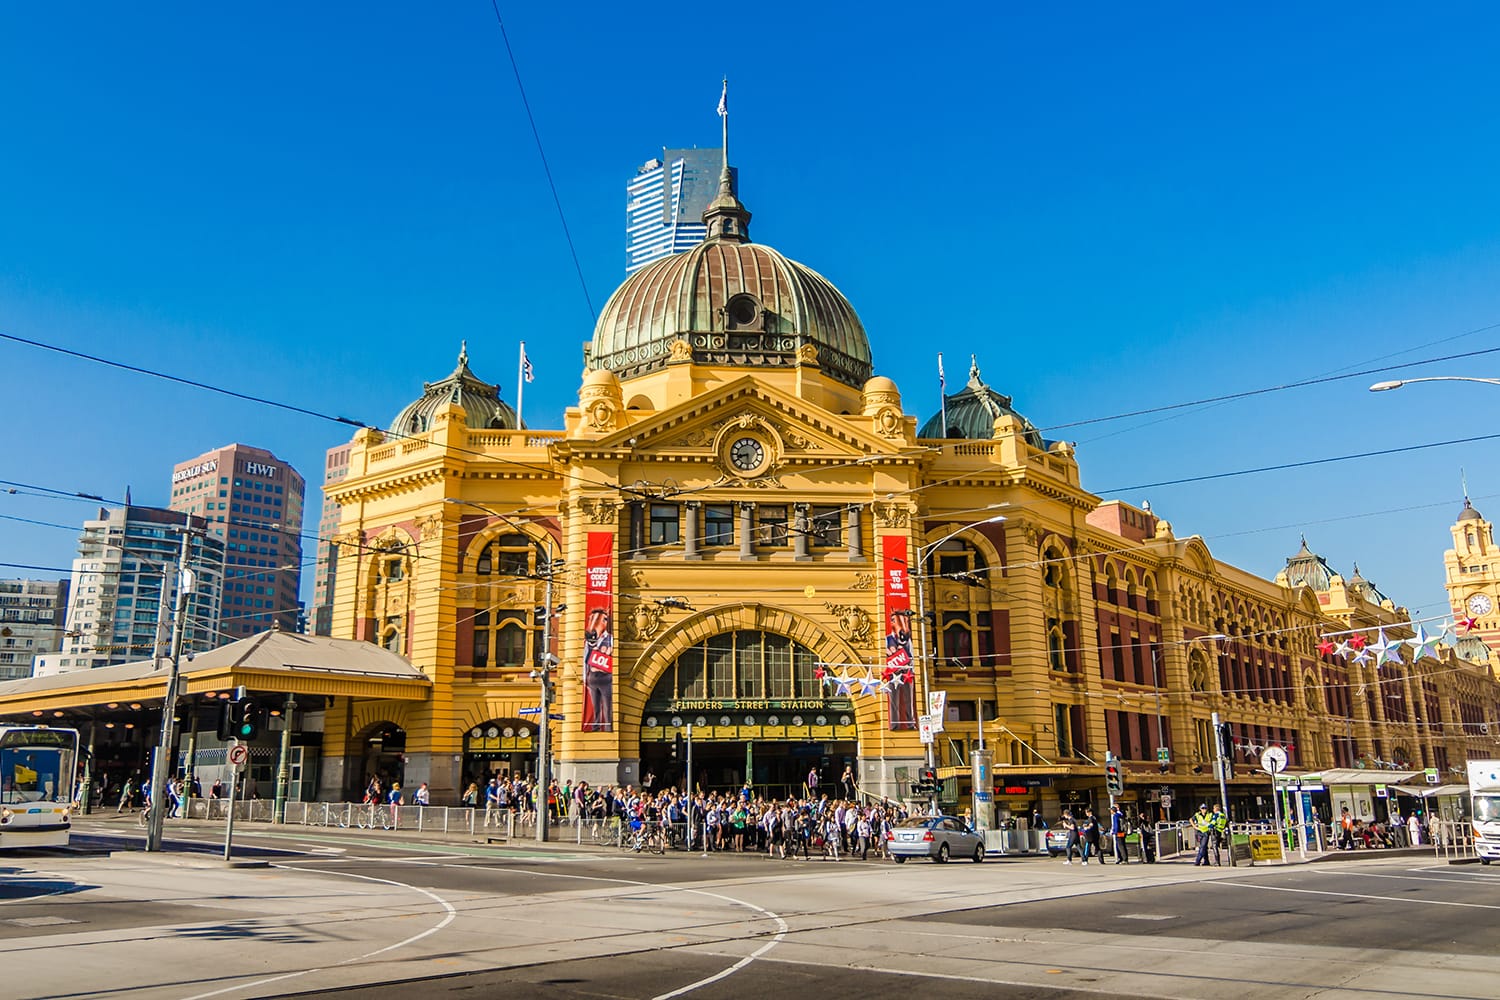 Flinders Street Station is the biggest station in Melbourne, Australia